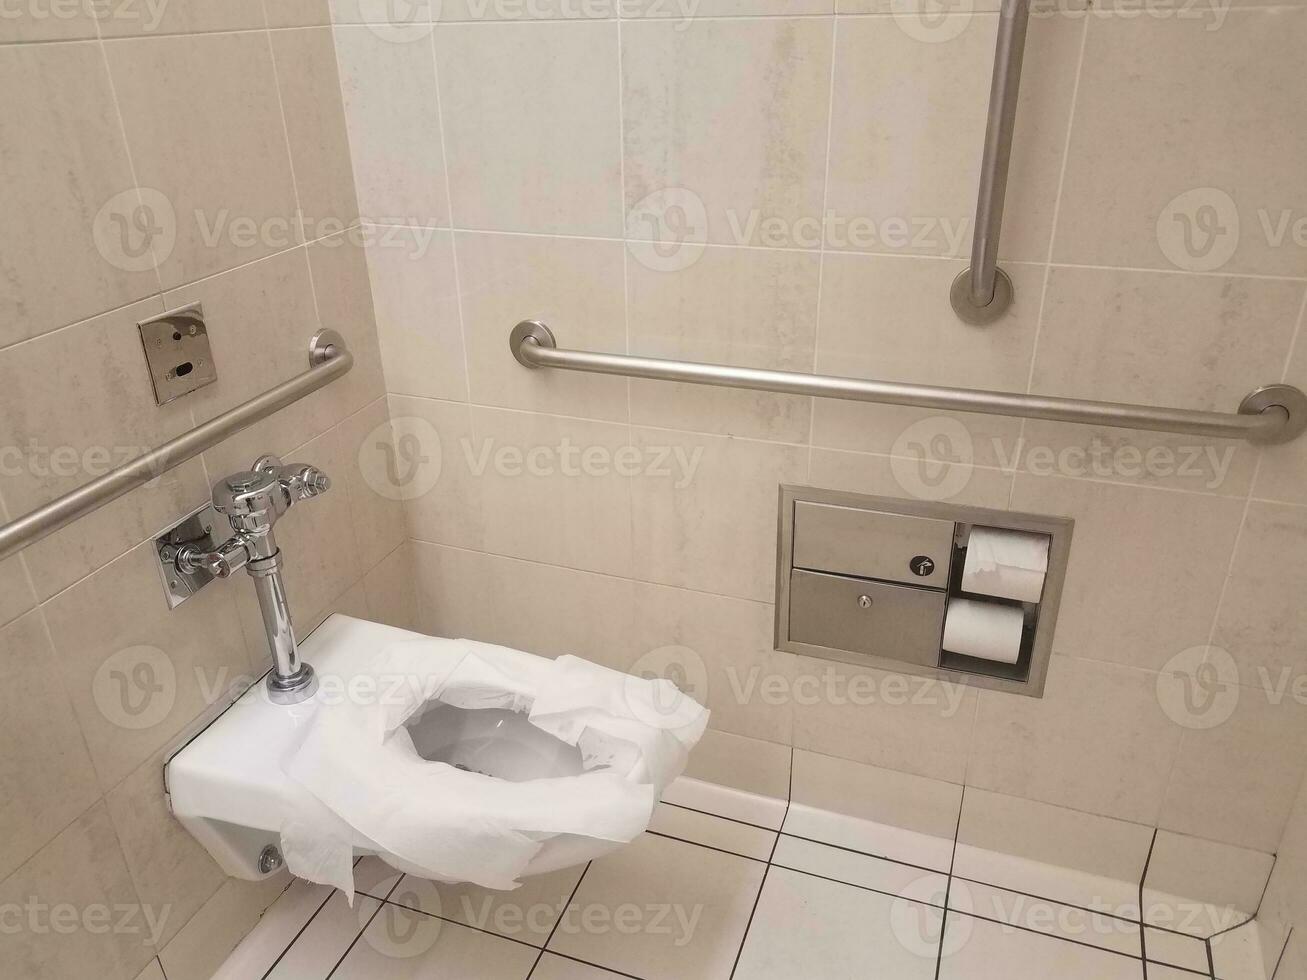 toilettes de salle de bain avec garde-corps en papier et métal photo